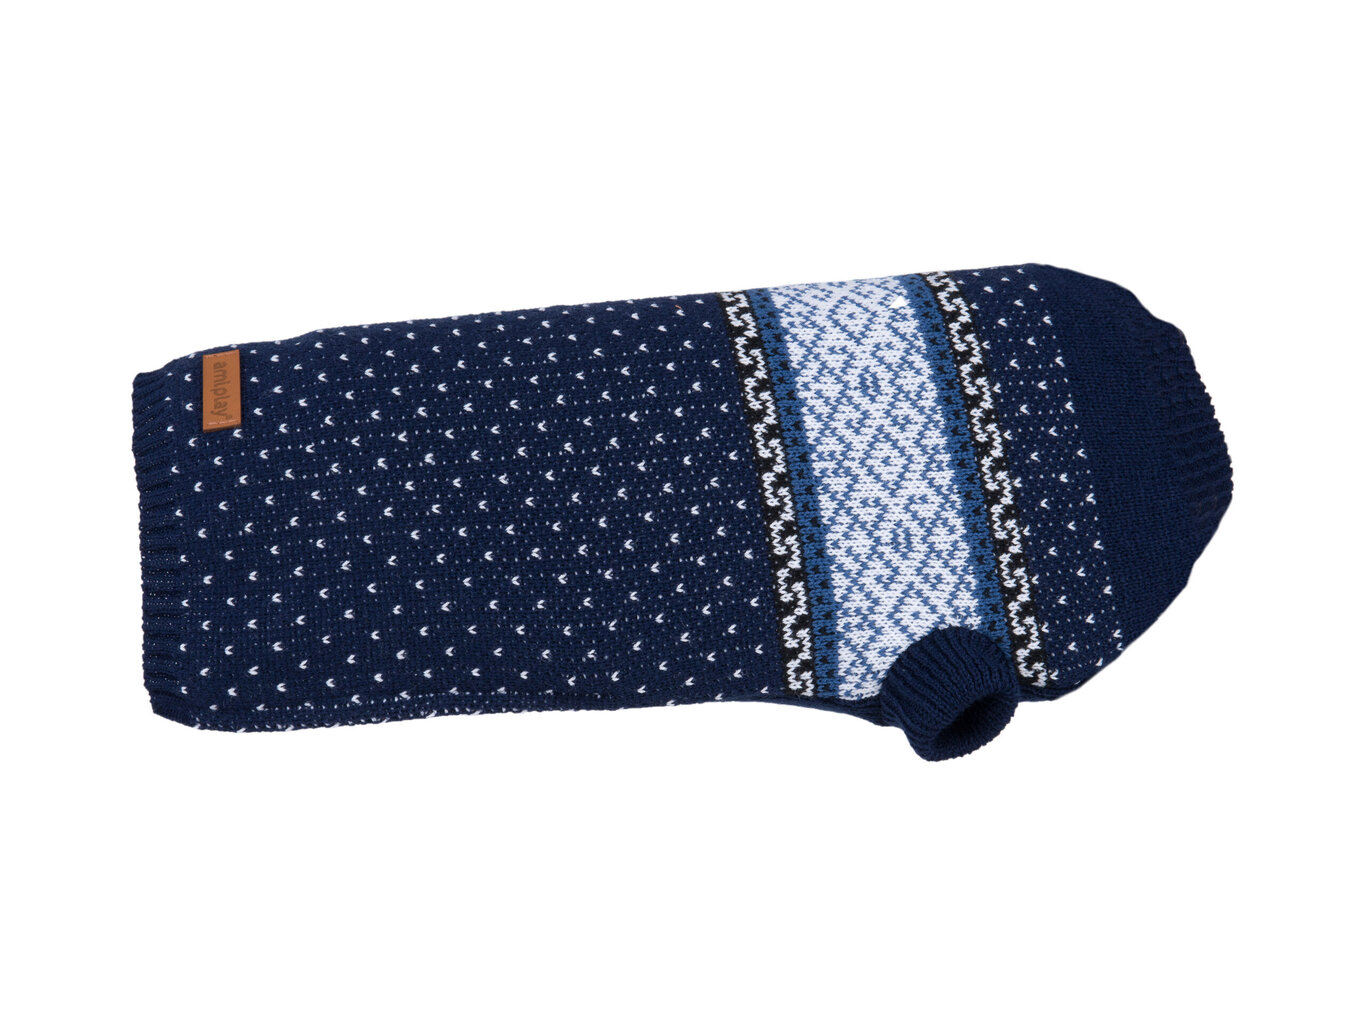 Amiplay džemperis sunim Bergen Navy Blue, 50 cm cena un informācija | Apģērbi suņiem | 220.lv